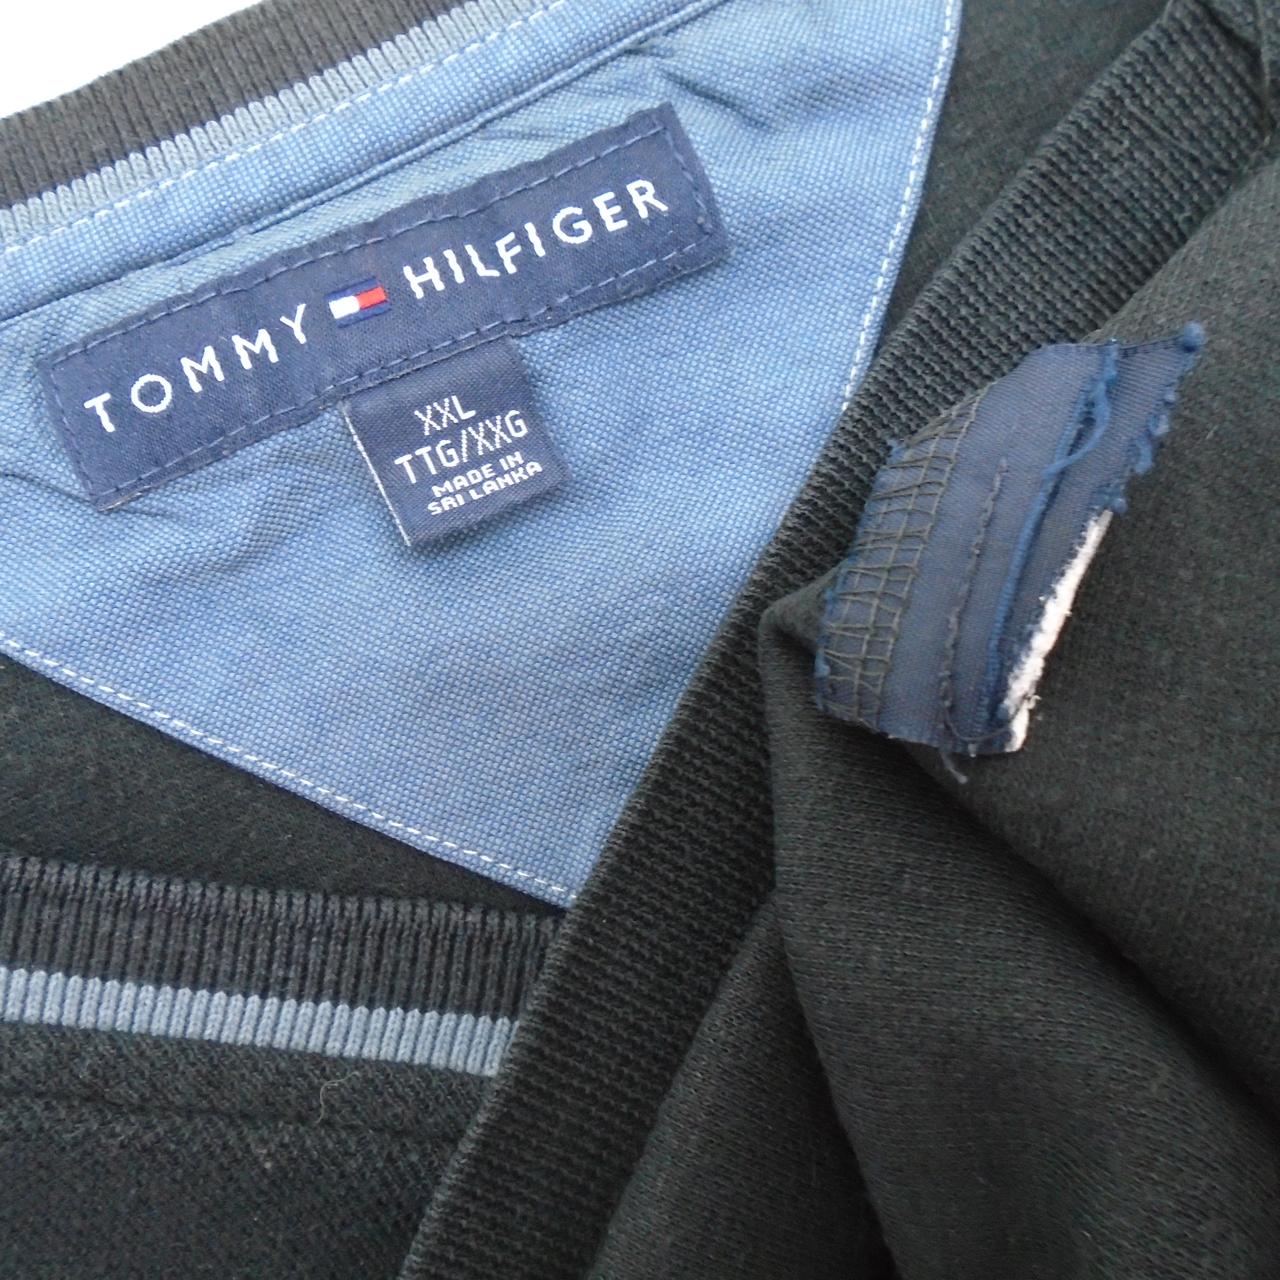 Jersey de hombre Tommy Hilfiger. Negro. XL. Usado. Bien